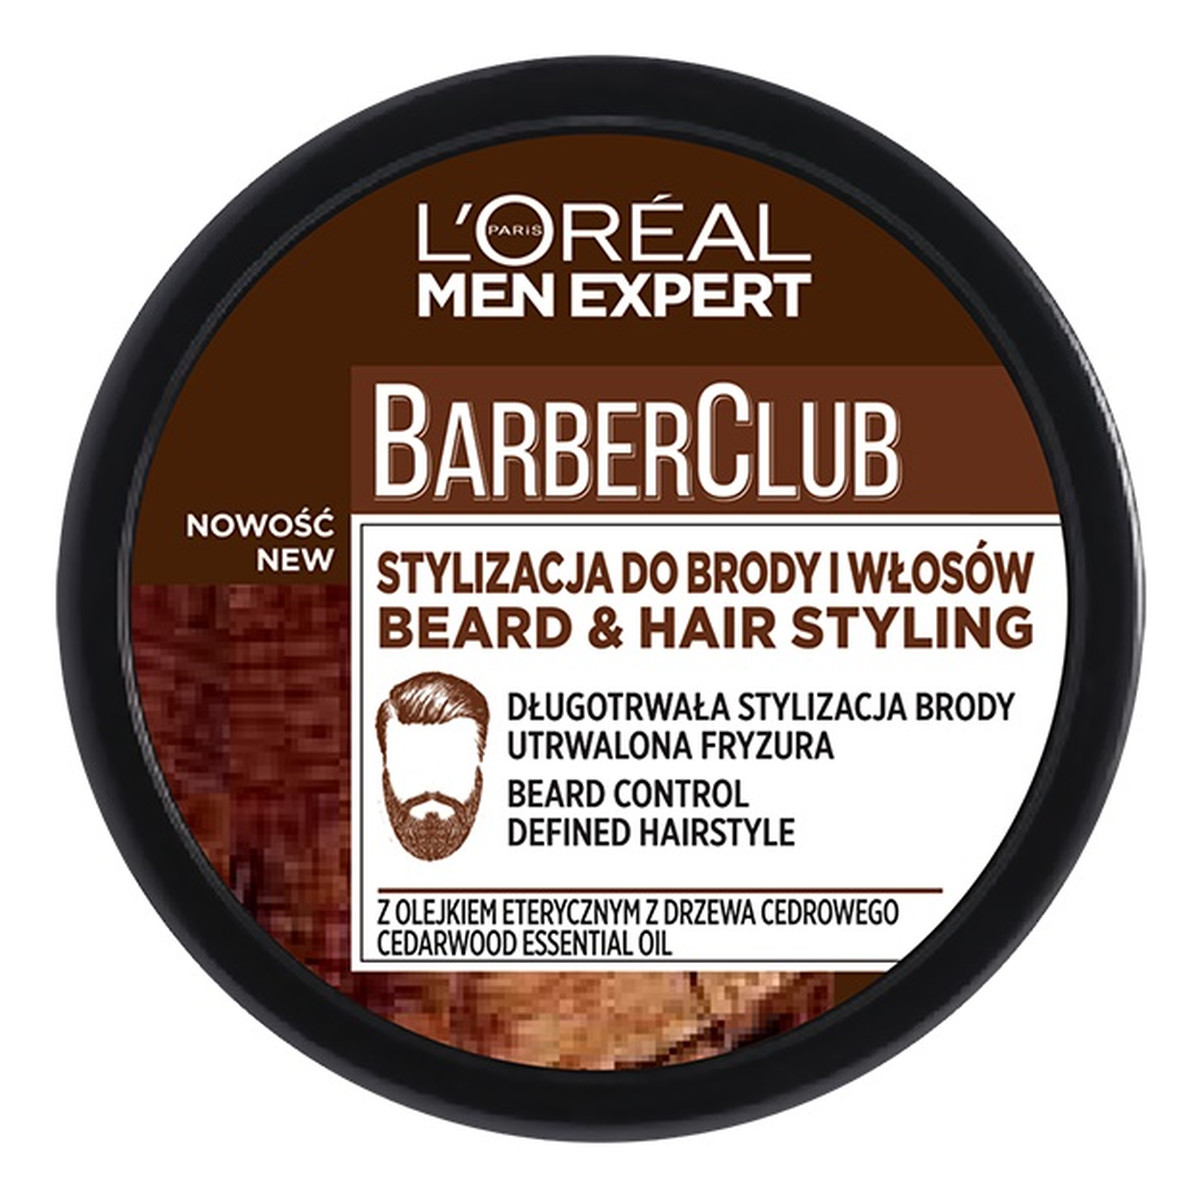 L'Oreal Paris Men Expert Barber Club krem do stylizacji brody i włosów 75ml